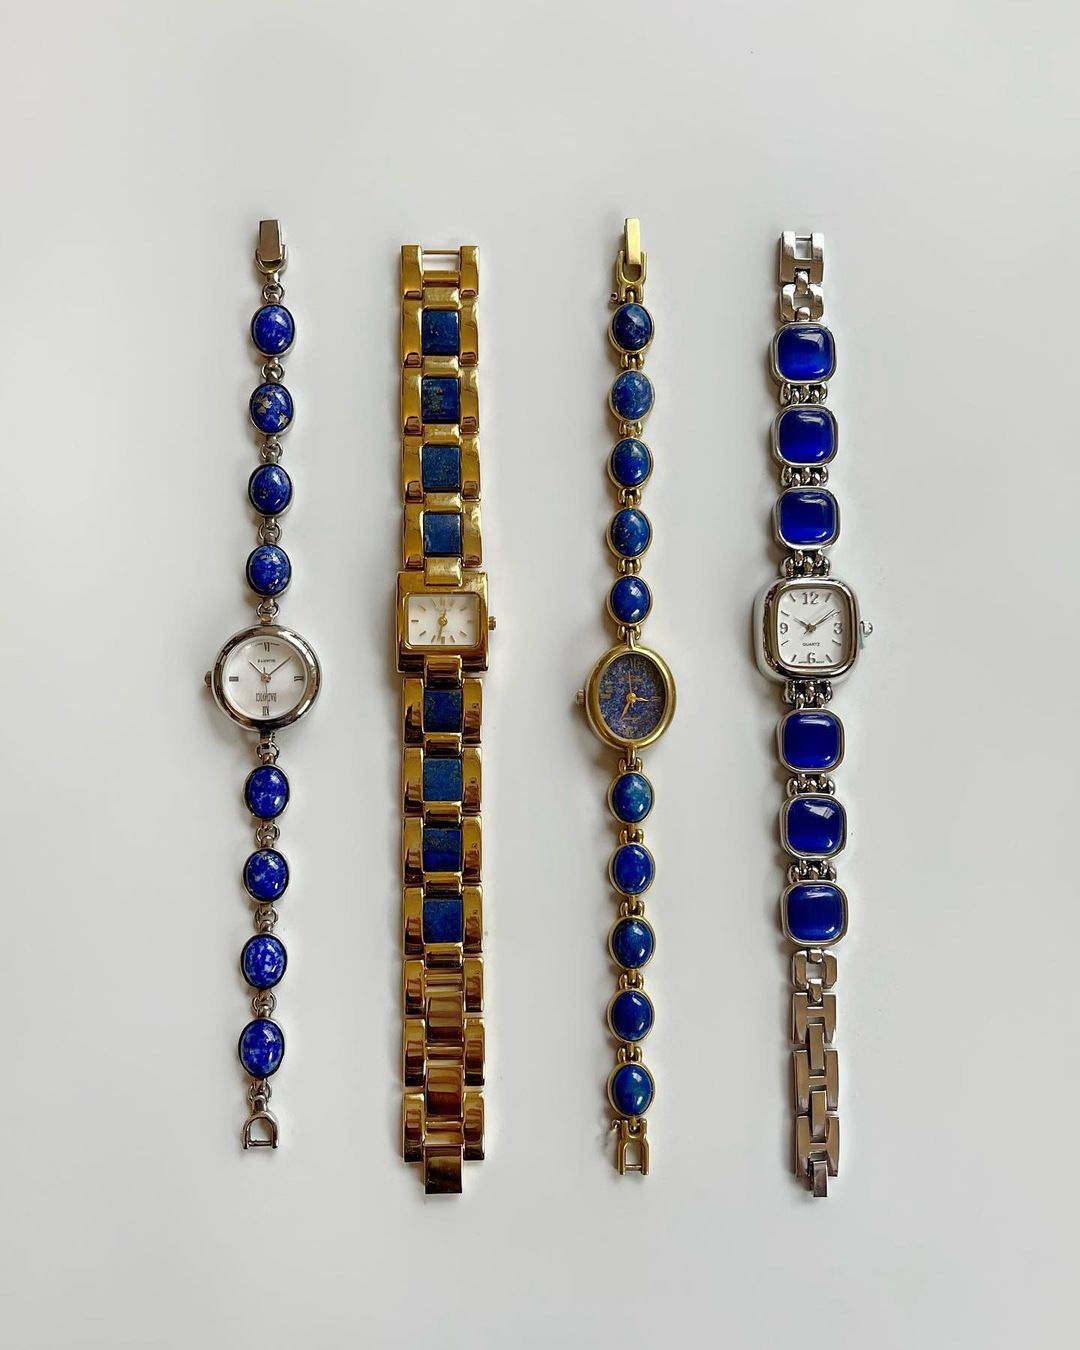 Calypso Studios: Vintage satovi stari preko 100 godina koje želimo u našoj kolekciji